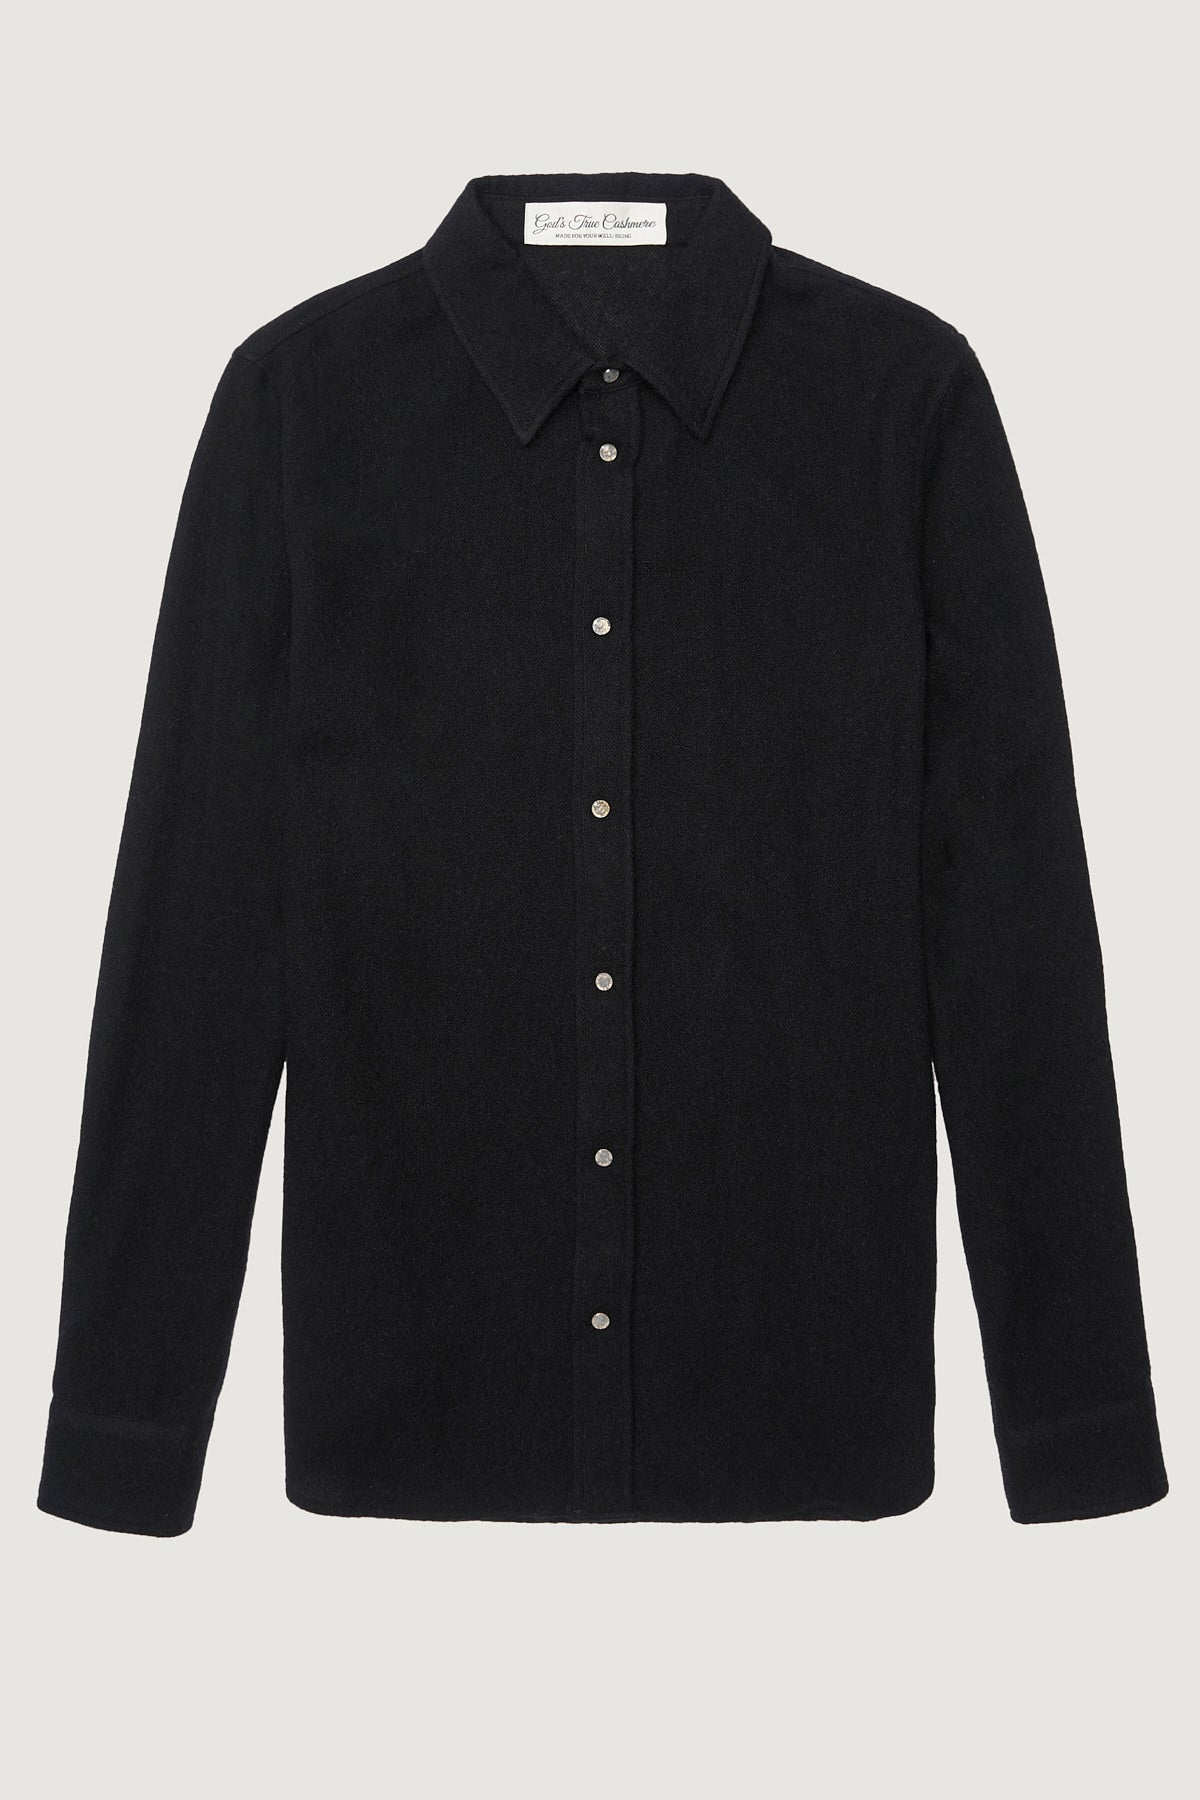 Black Gauze Cashmere Shirt